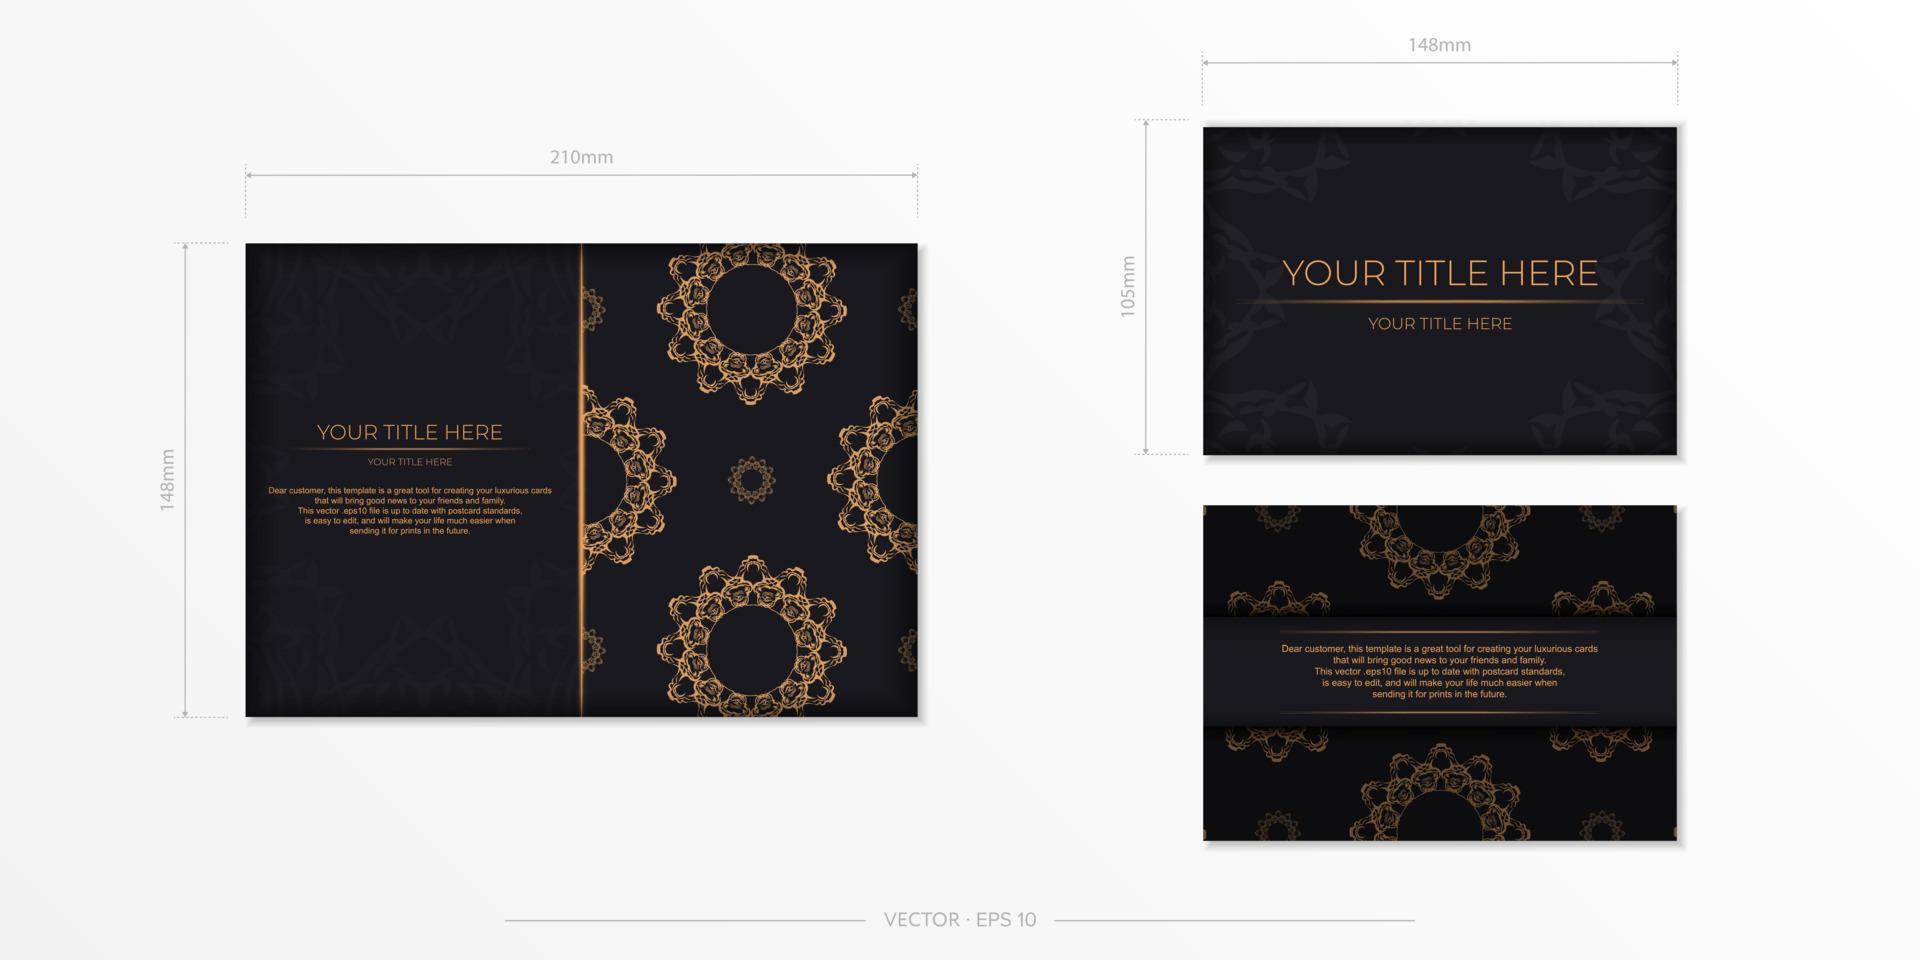 retangular preparando cartões postais em preto com luxuosos ornamentos de ouro. modelo vetorial para impressão de cartão de convite de design com padrões vintage. vetor